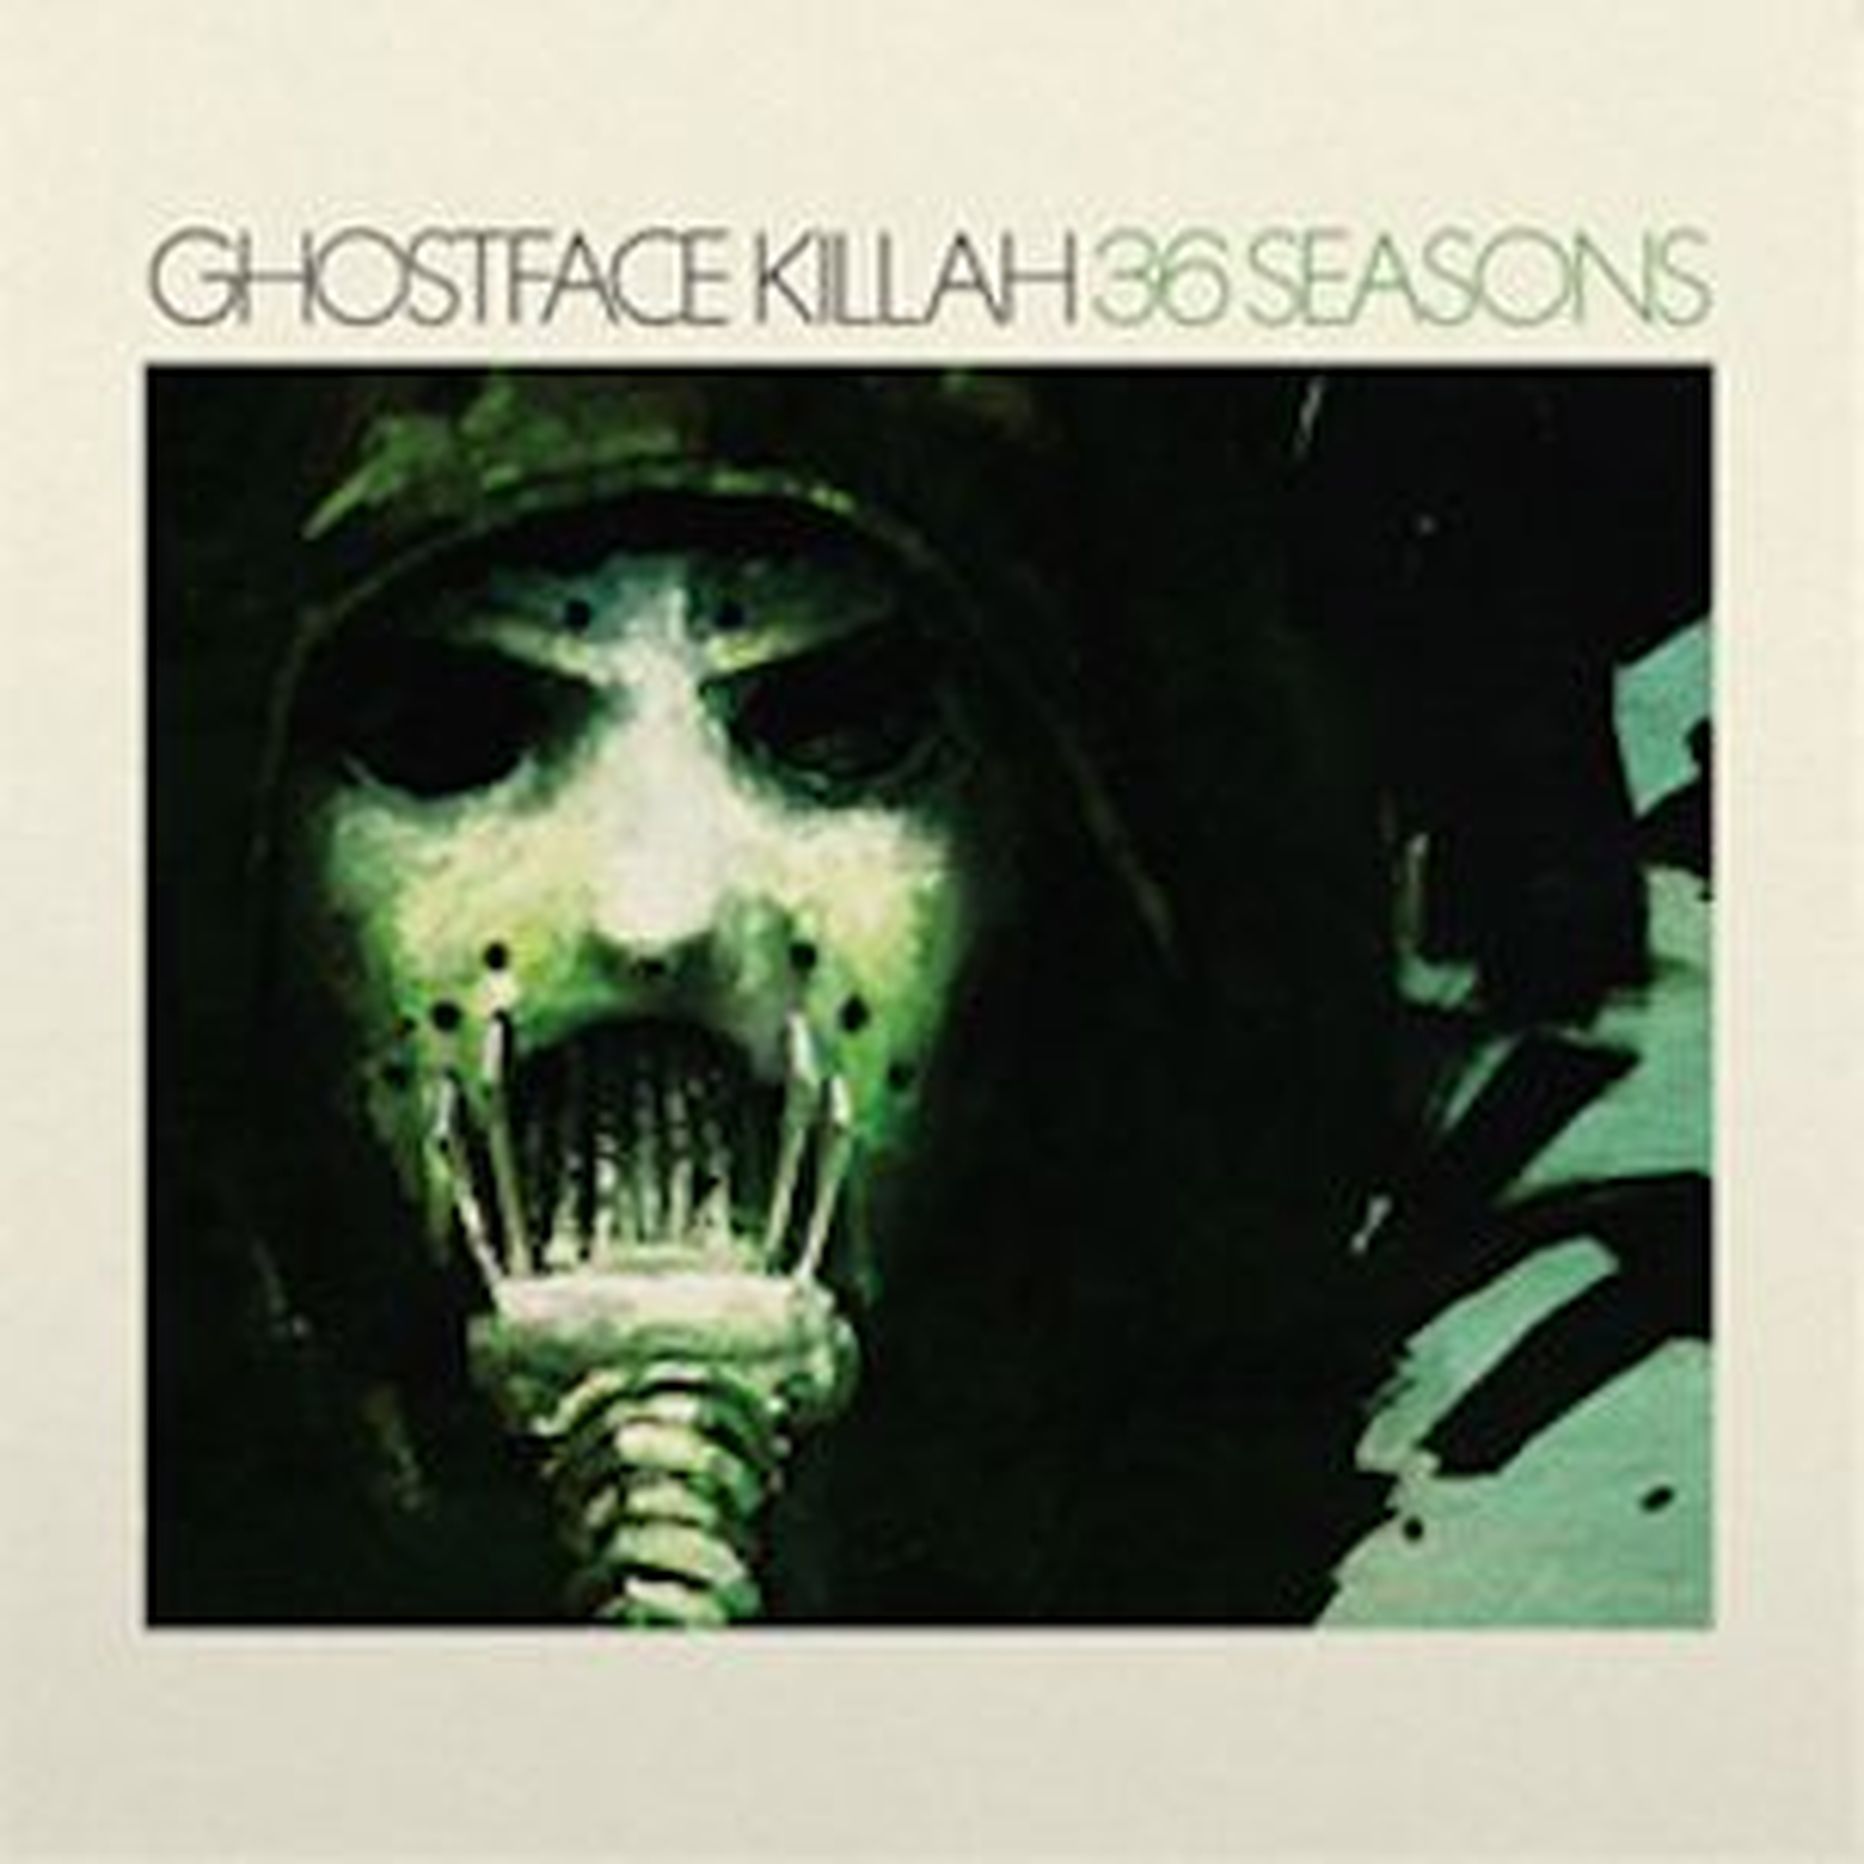 Ghostface Killah- 36 Seasons